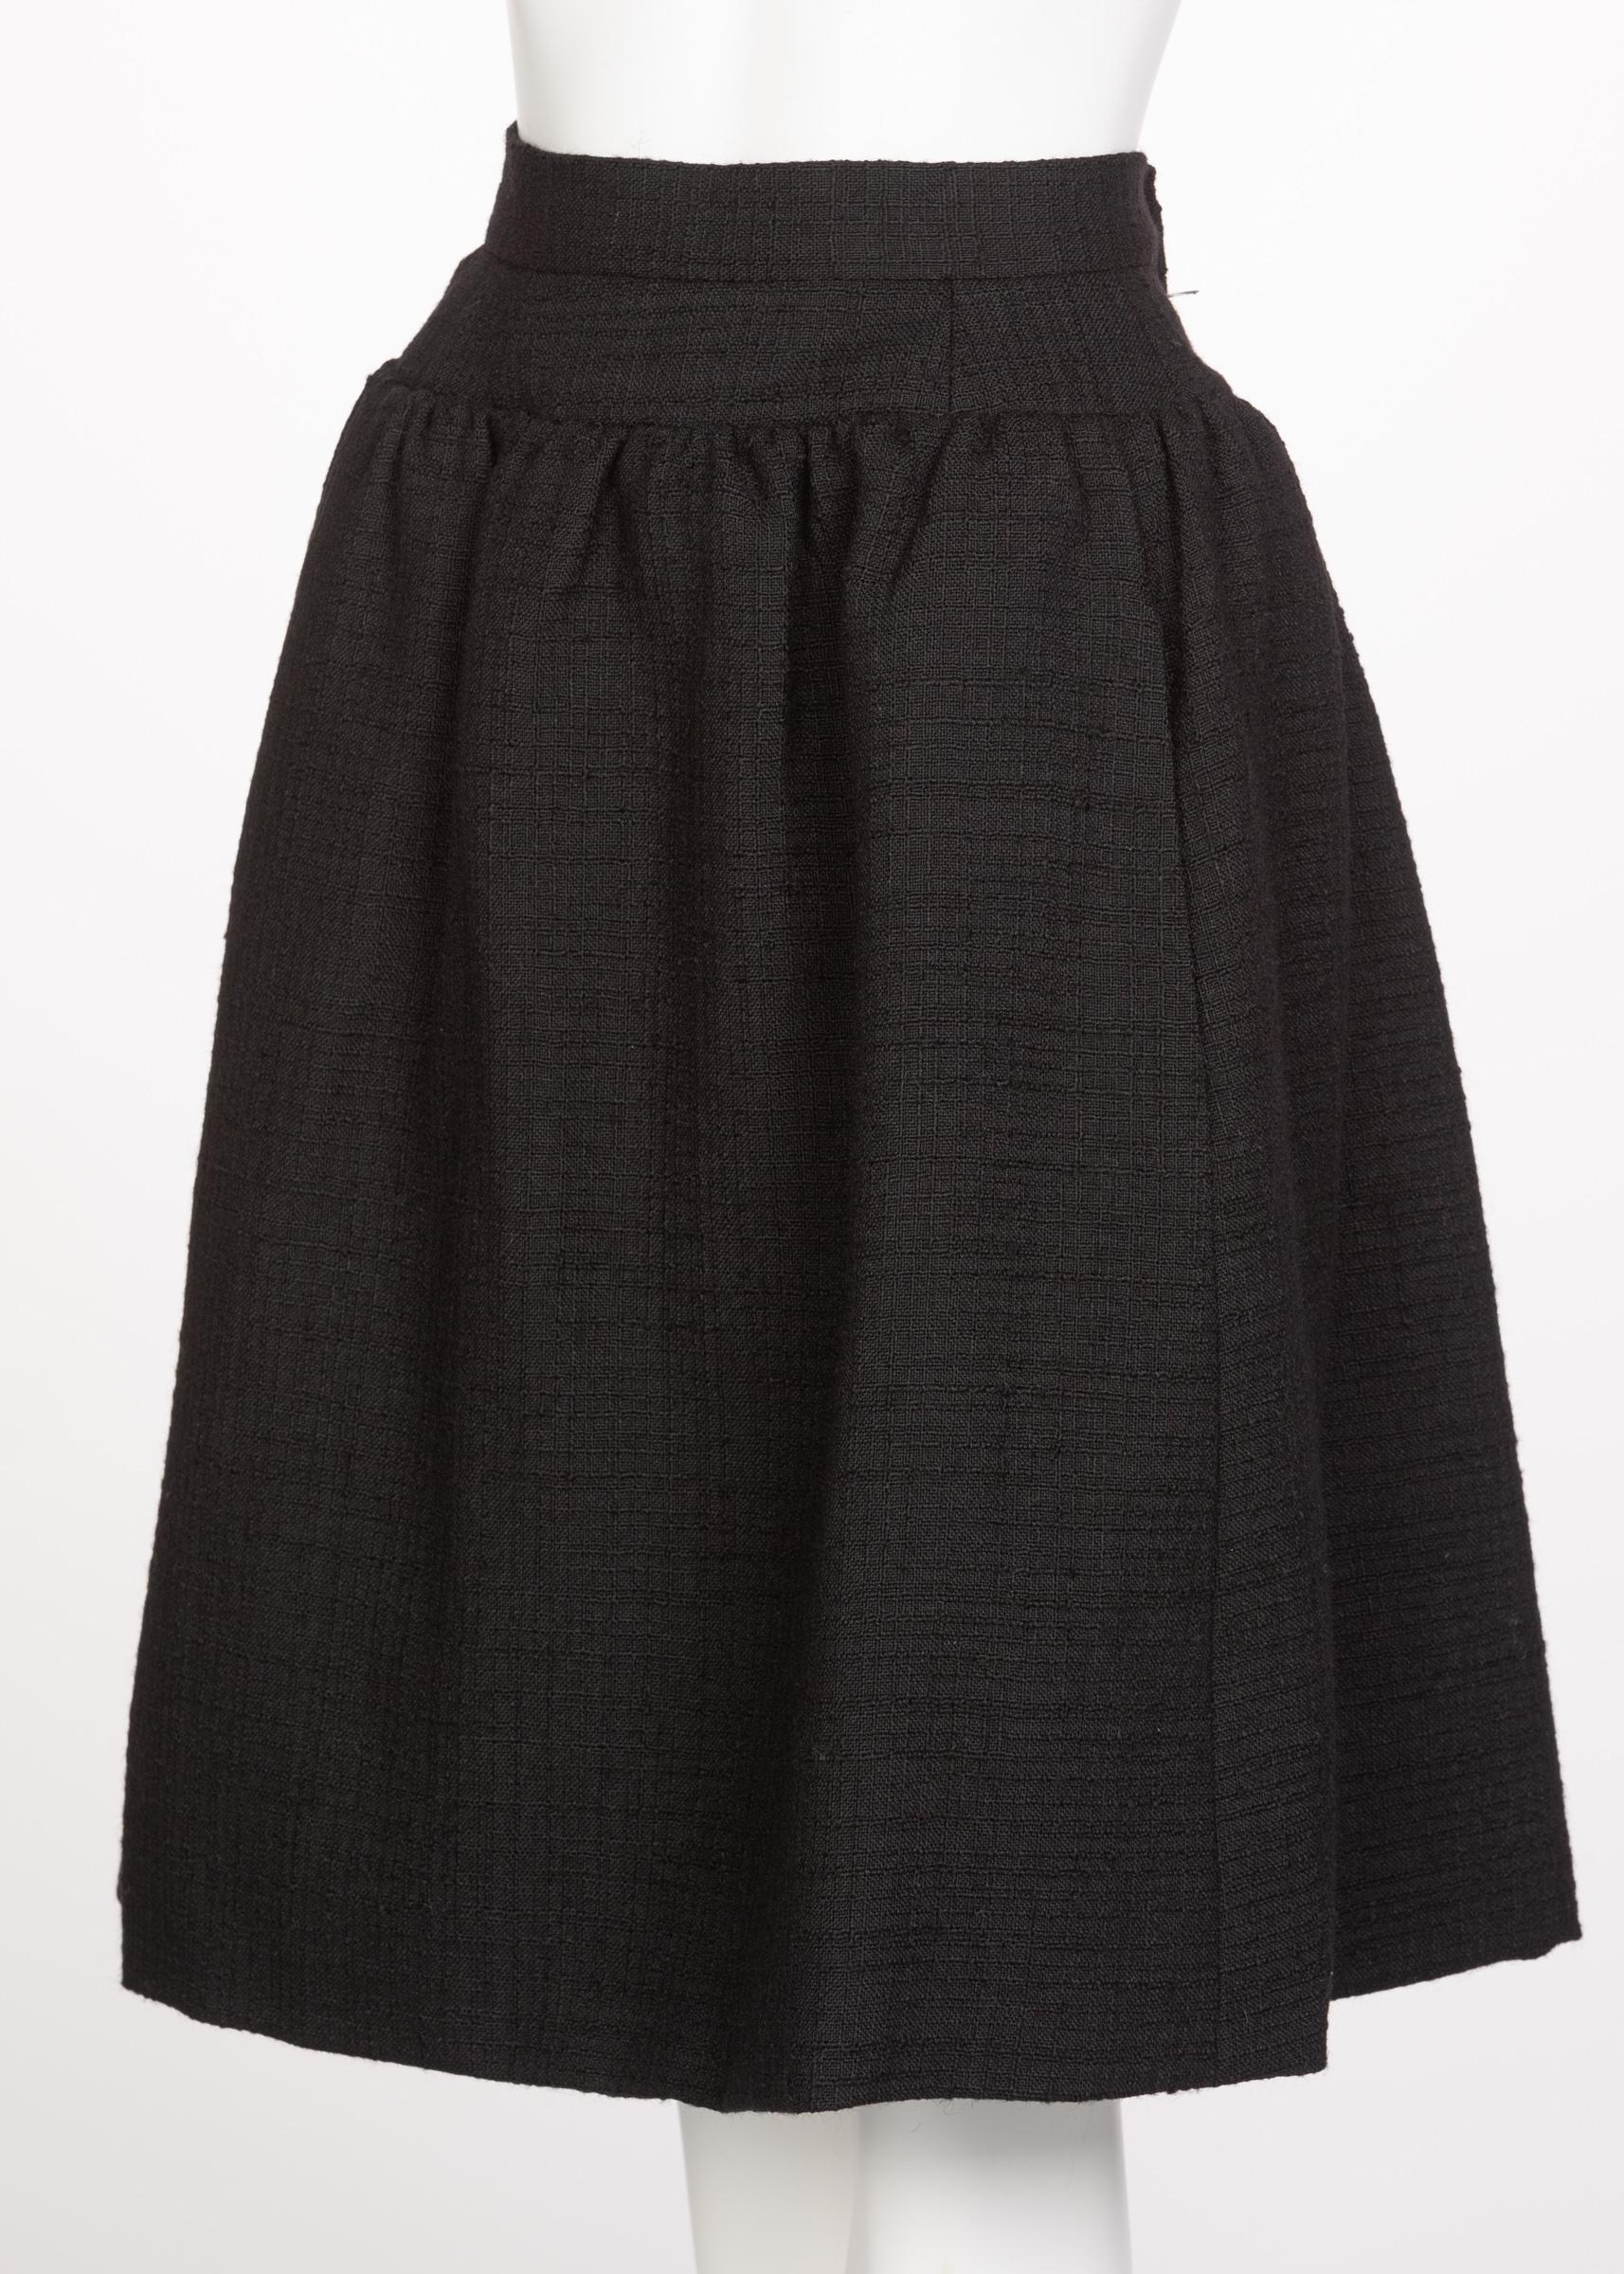 Norman Norell Couture Tailleur jupe tailleur noir/haut sans manches, années 1960 en vente 2